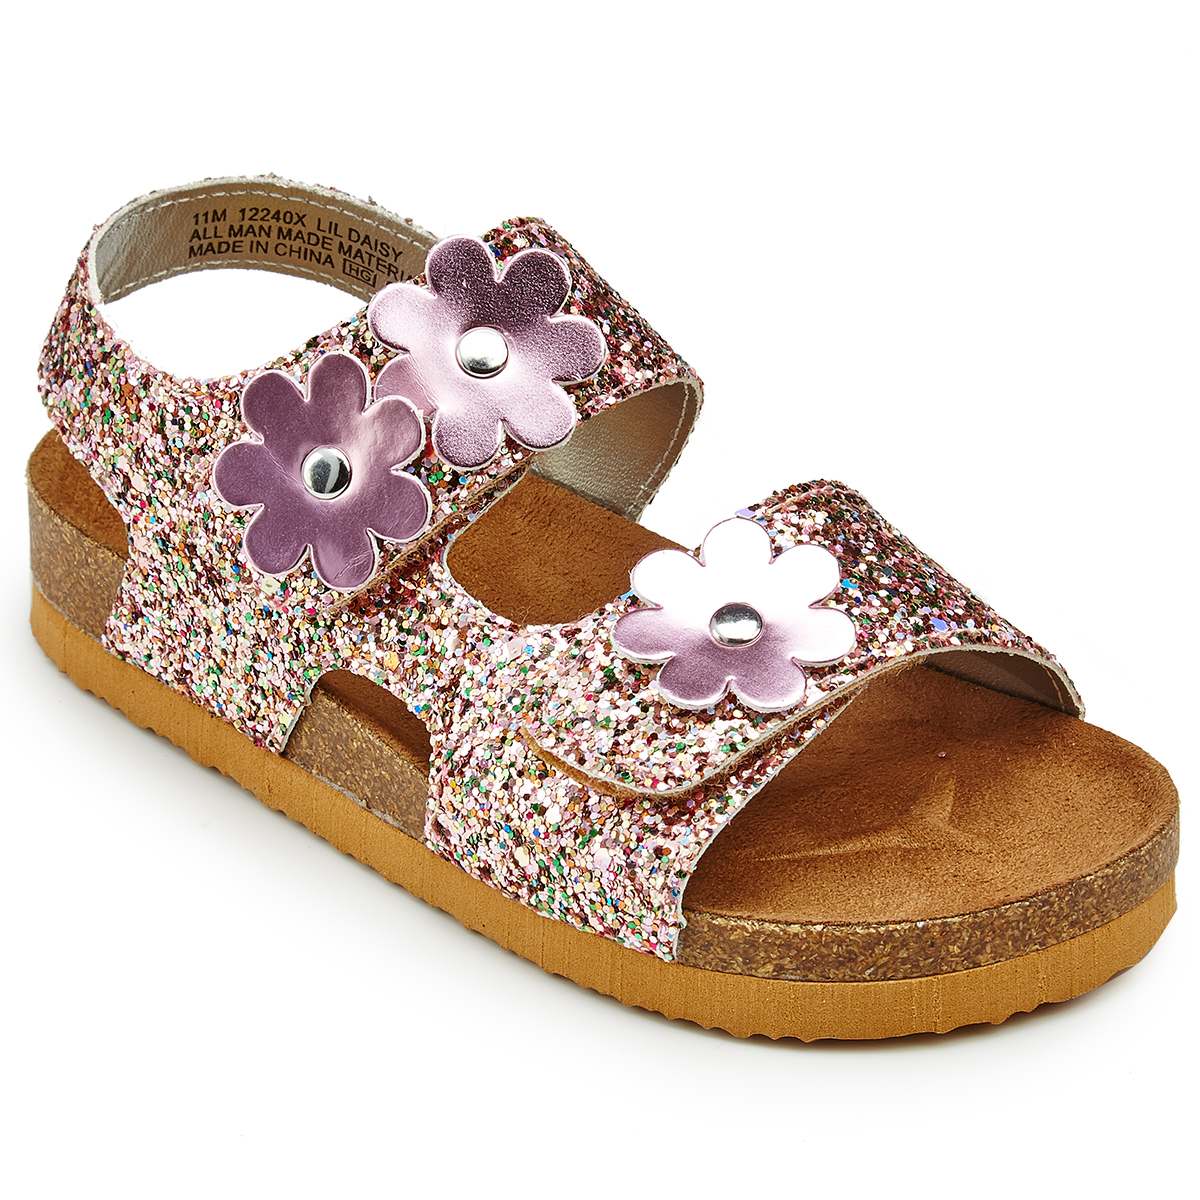 Rachel Shoes Toddler Girls' Daisy Glitter Sandals - Various Patterns, 9